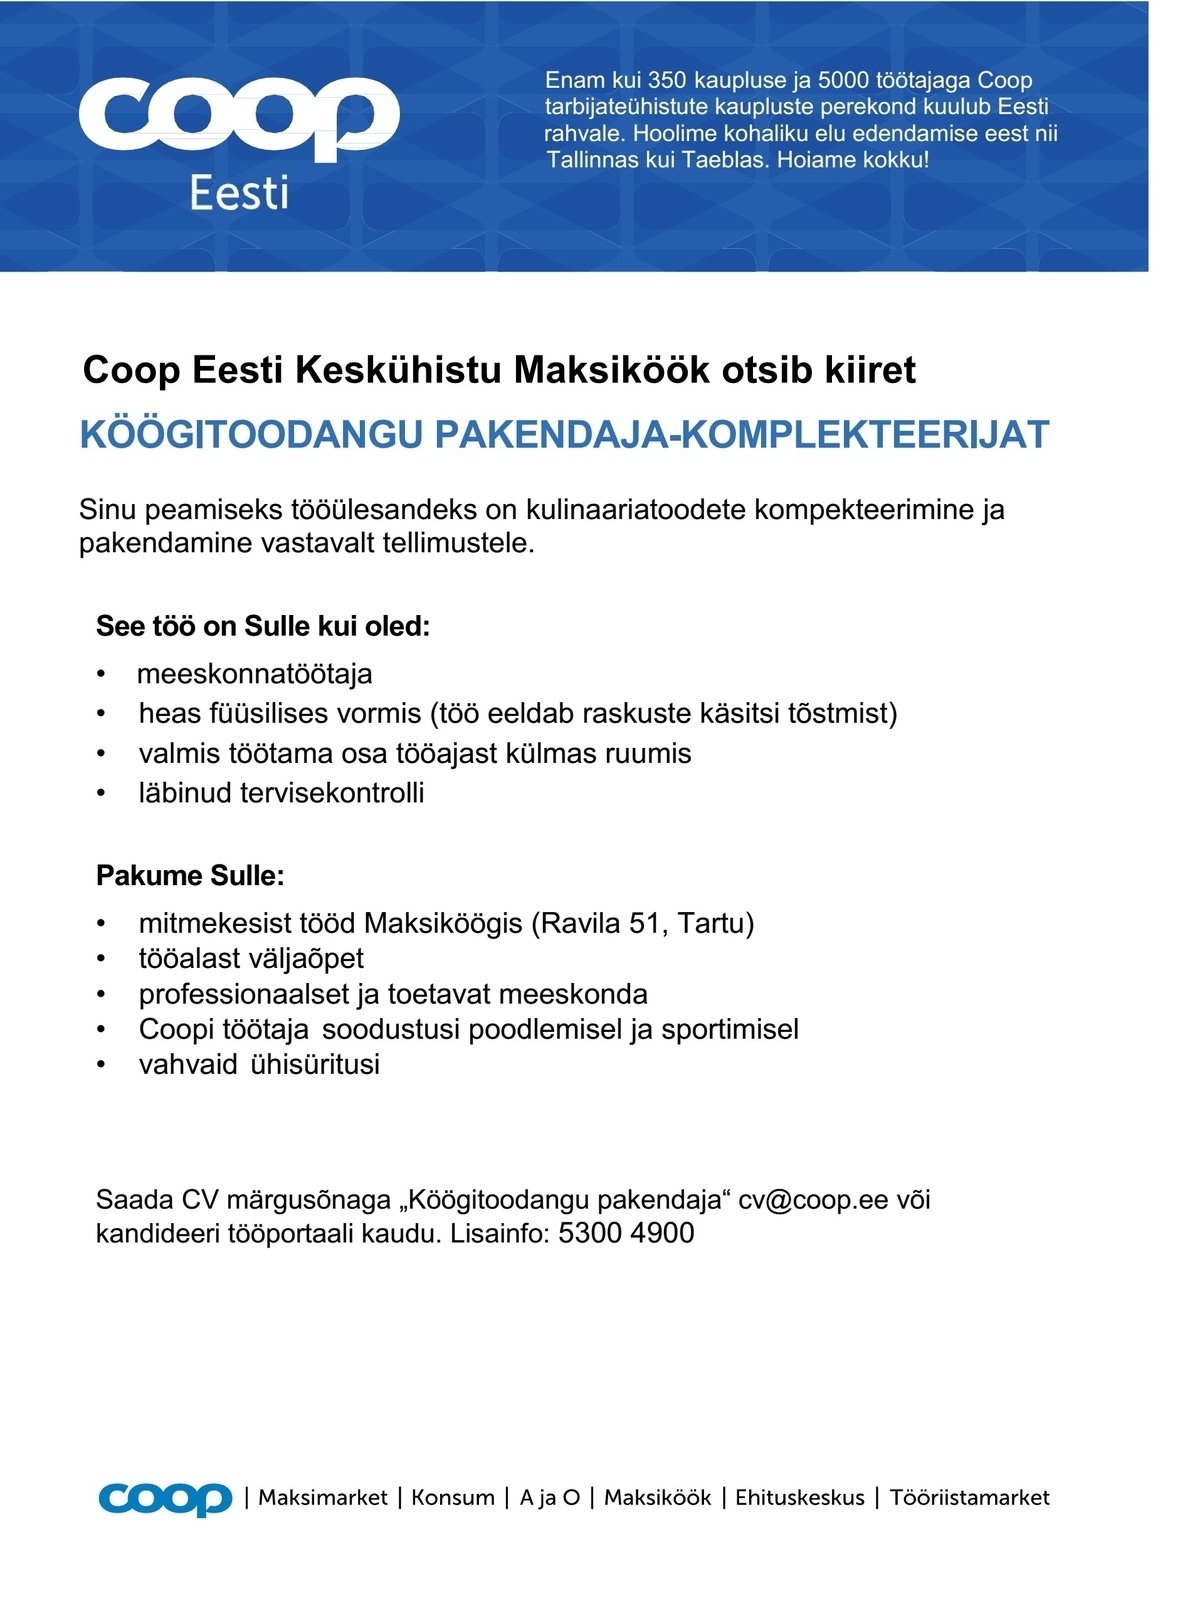 Coop Eesti Keskühistu Köögitoodangu pakendaja-komplekteerija (Maksiköök)